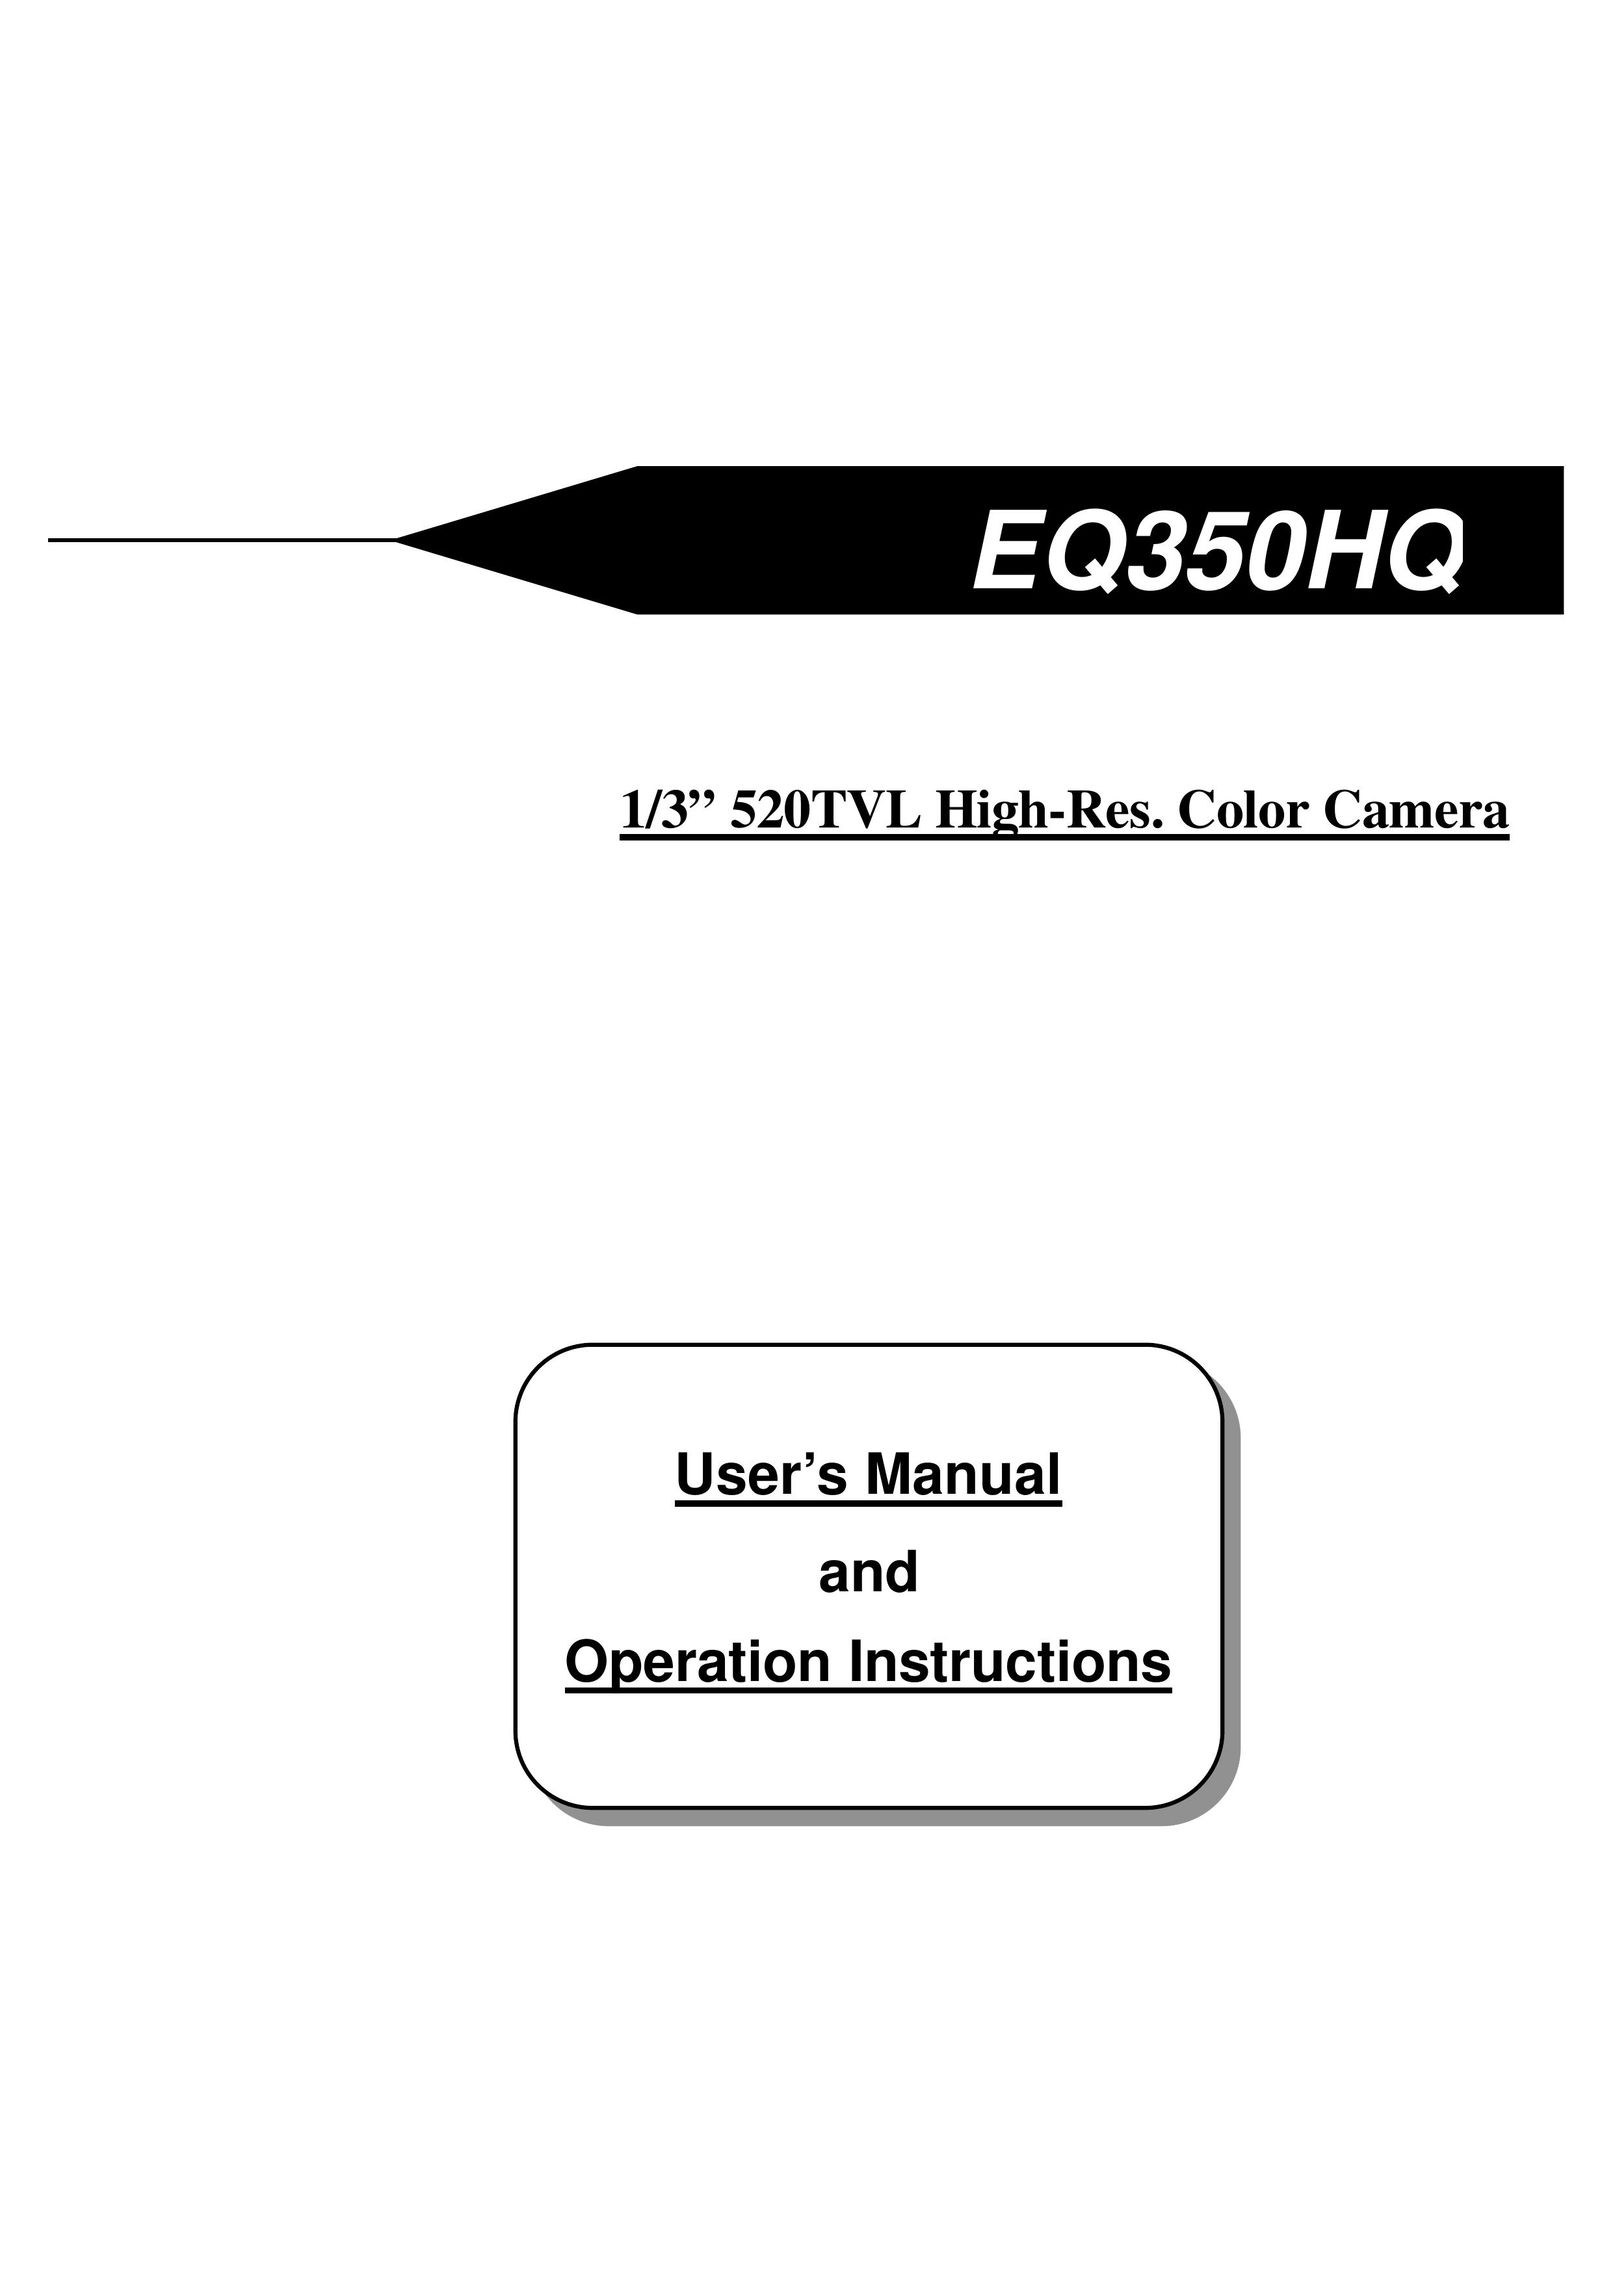 EverFocus EQ350HQ Board Games User Manual